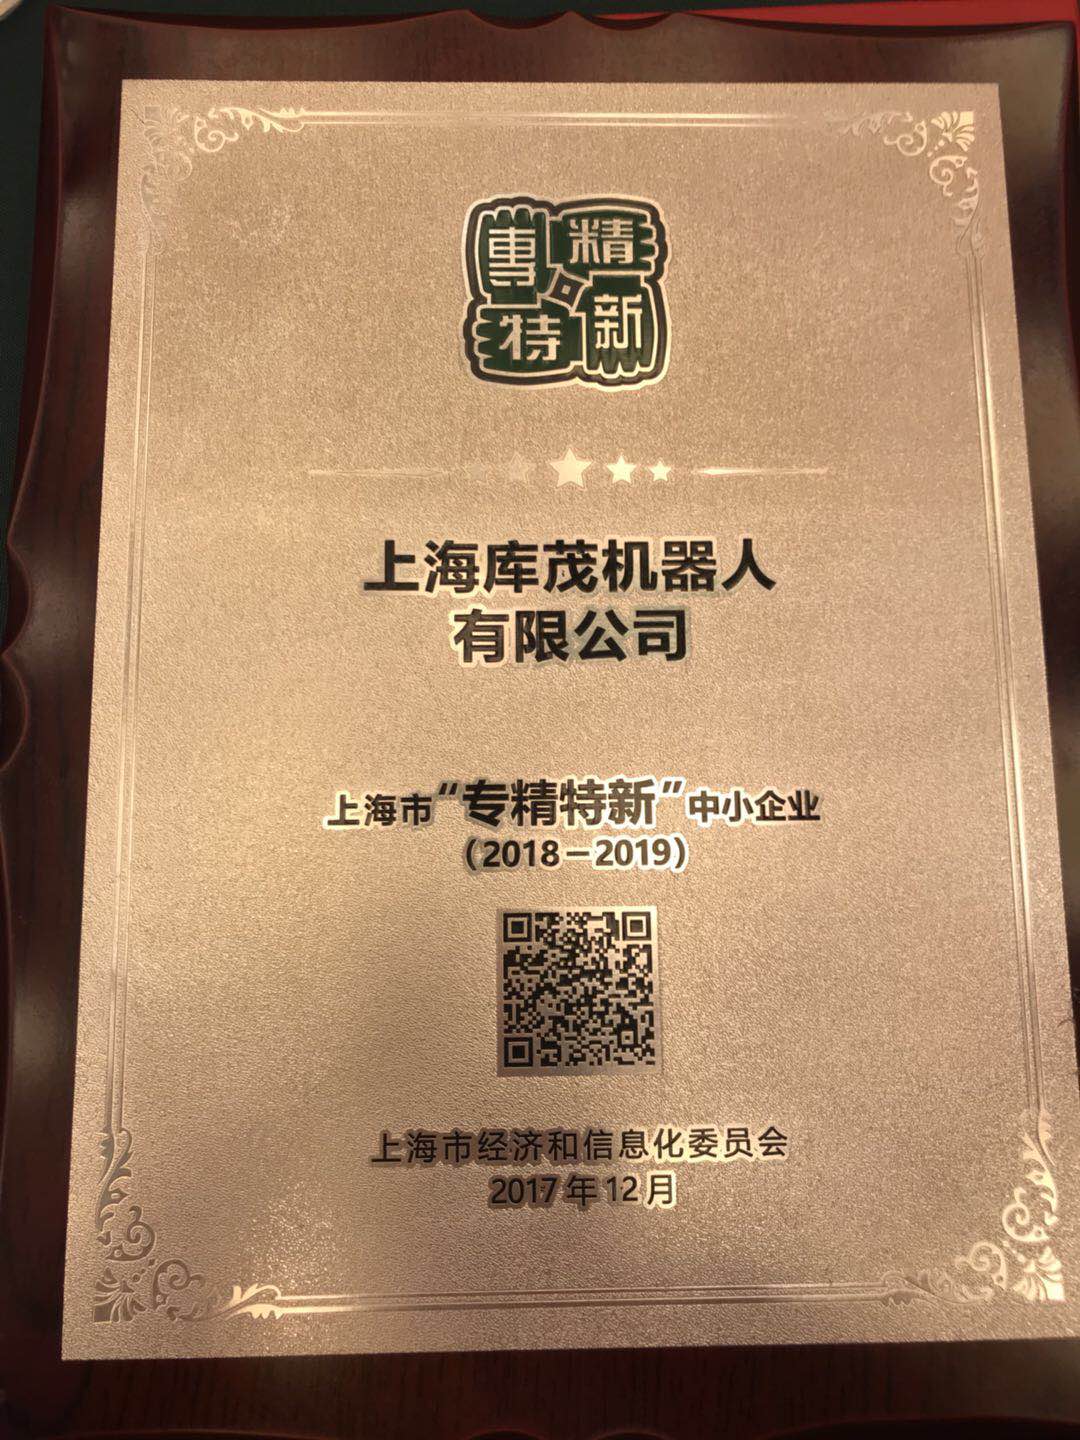 机器人在线荣获2017年度上海市“专精特新”中小企业称号